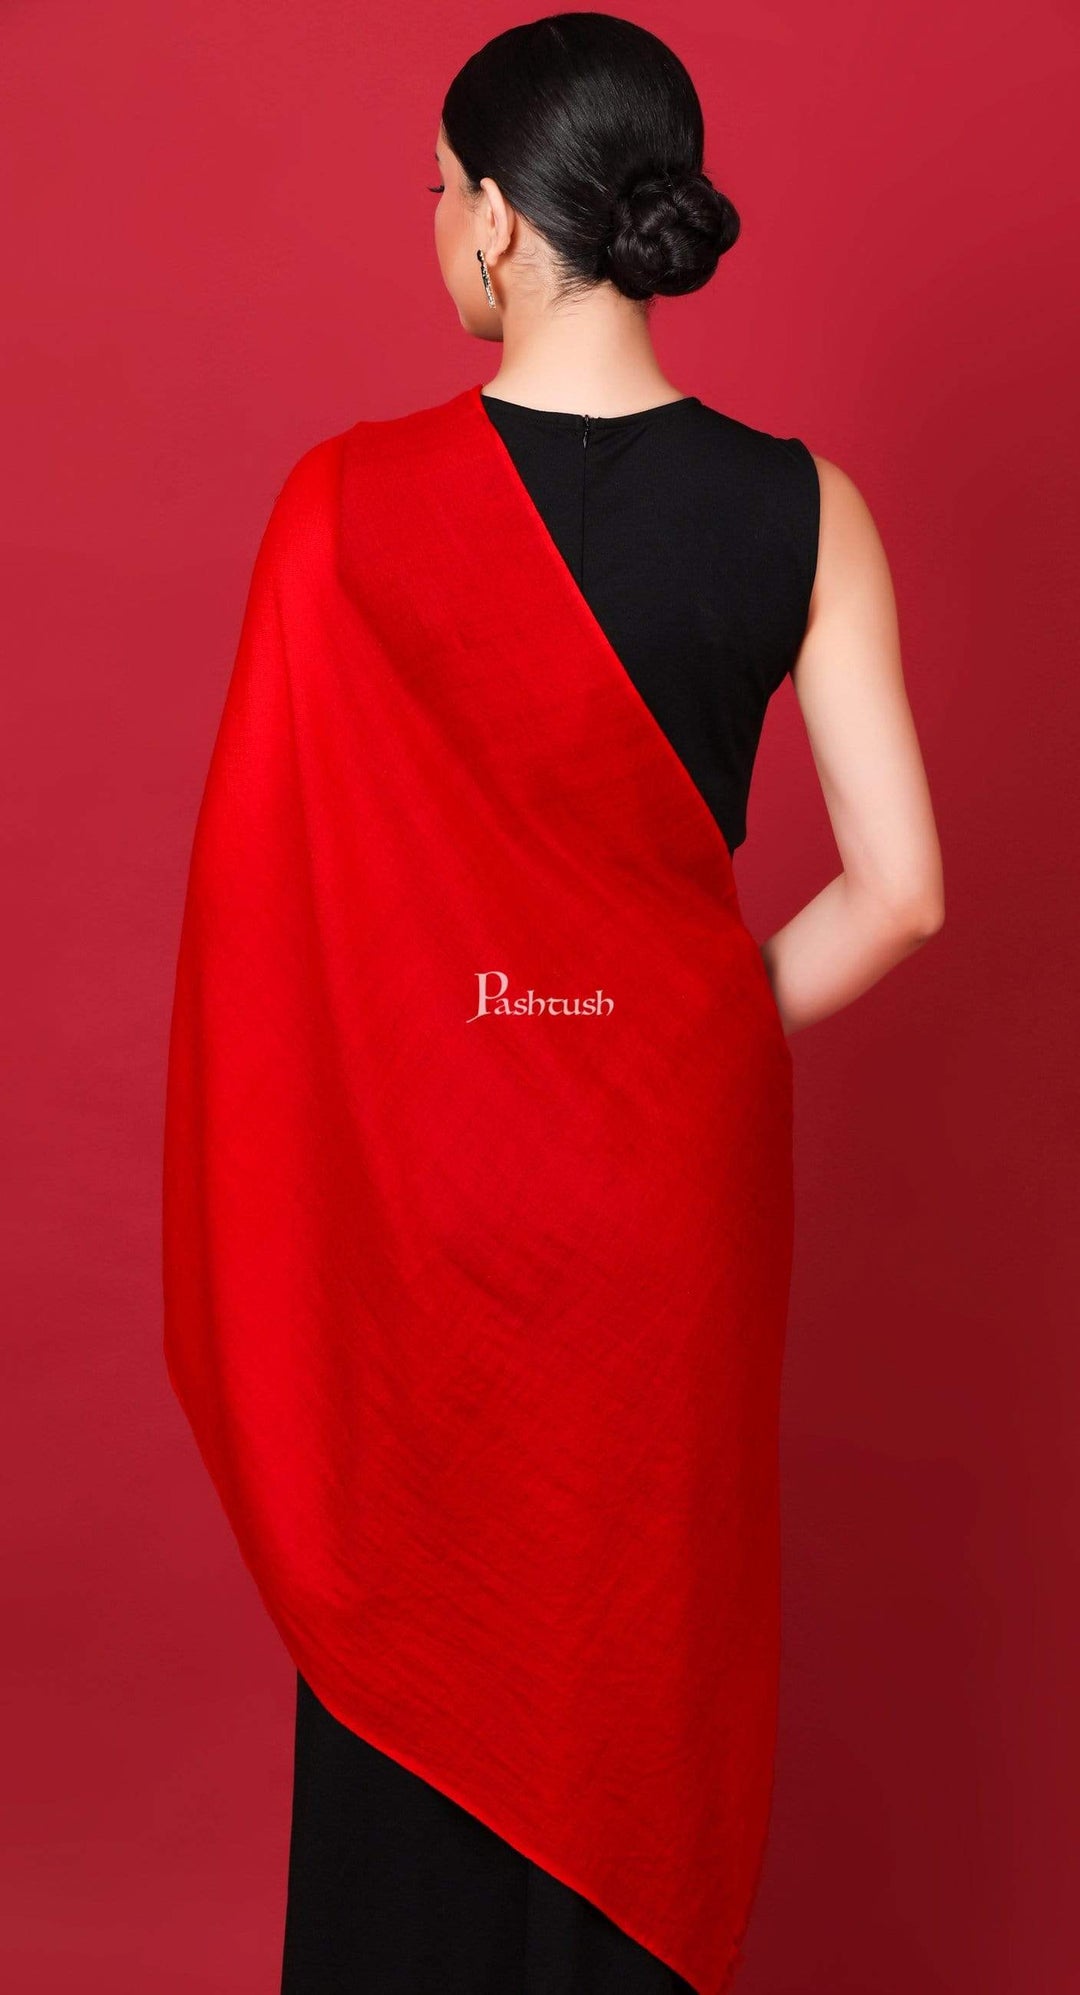 Pashtush Shawl Store Stole Pashtush Womens Cashmere Pashmina Scarf, Diamond Weave, Scarlet Red